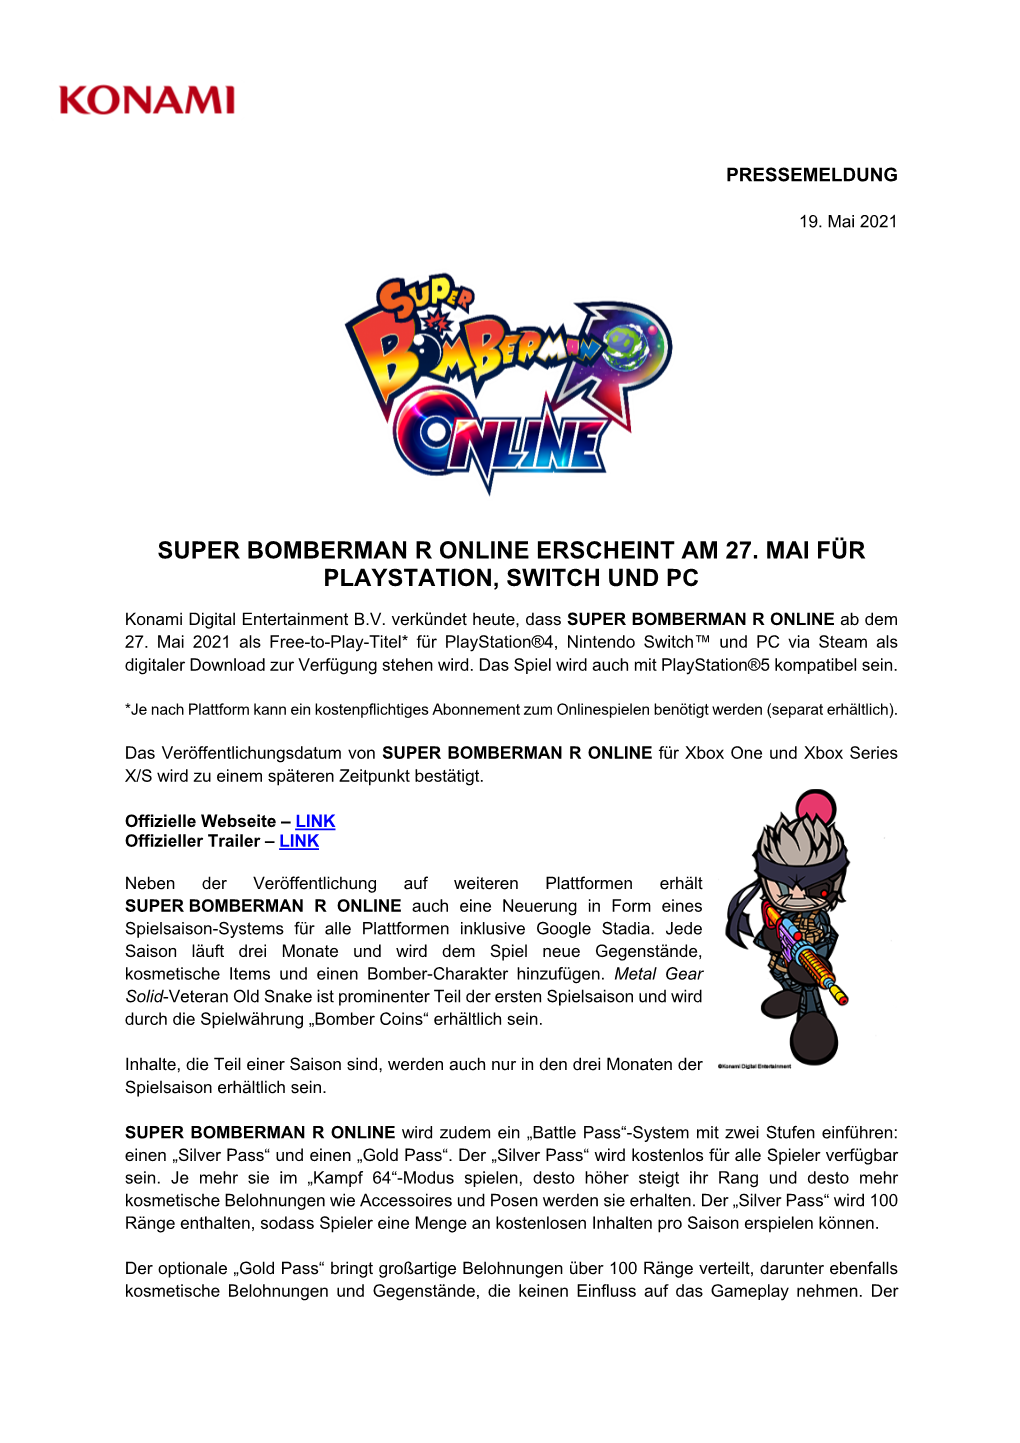 Super Bomberman R Online Erscheint Am 27. Mai Für Playstation, Switch Und Pc